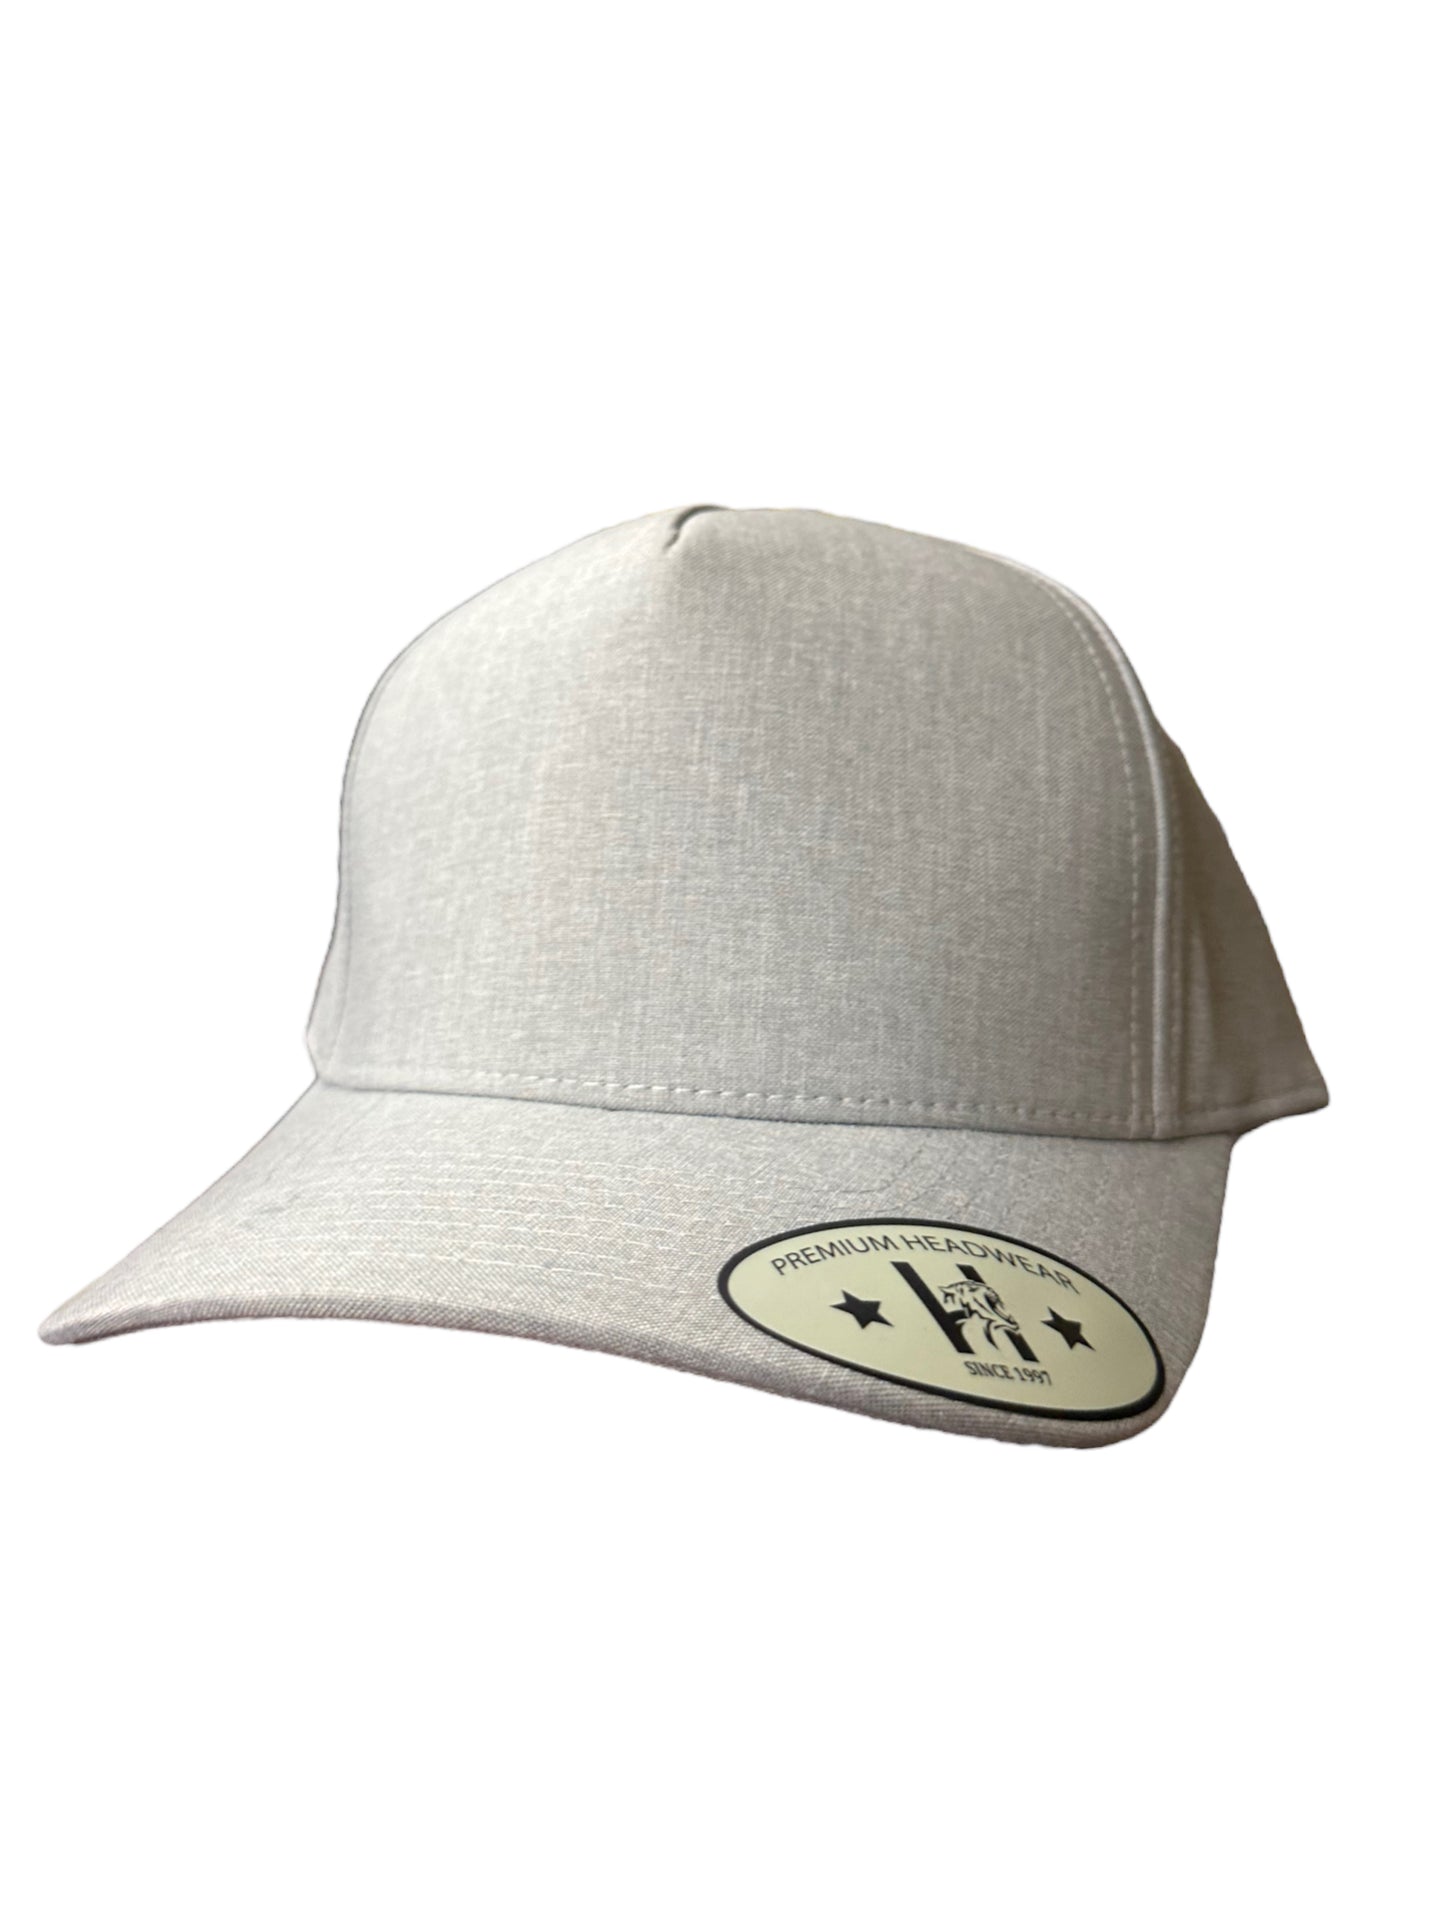 Light Grey soild A Frame SnapBack hat